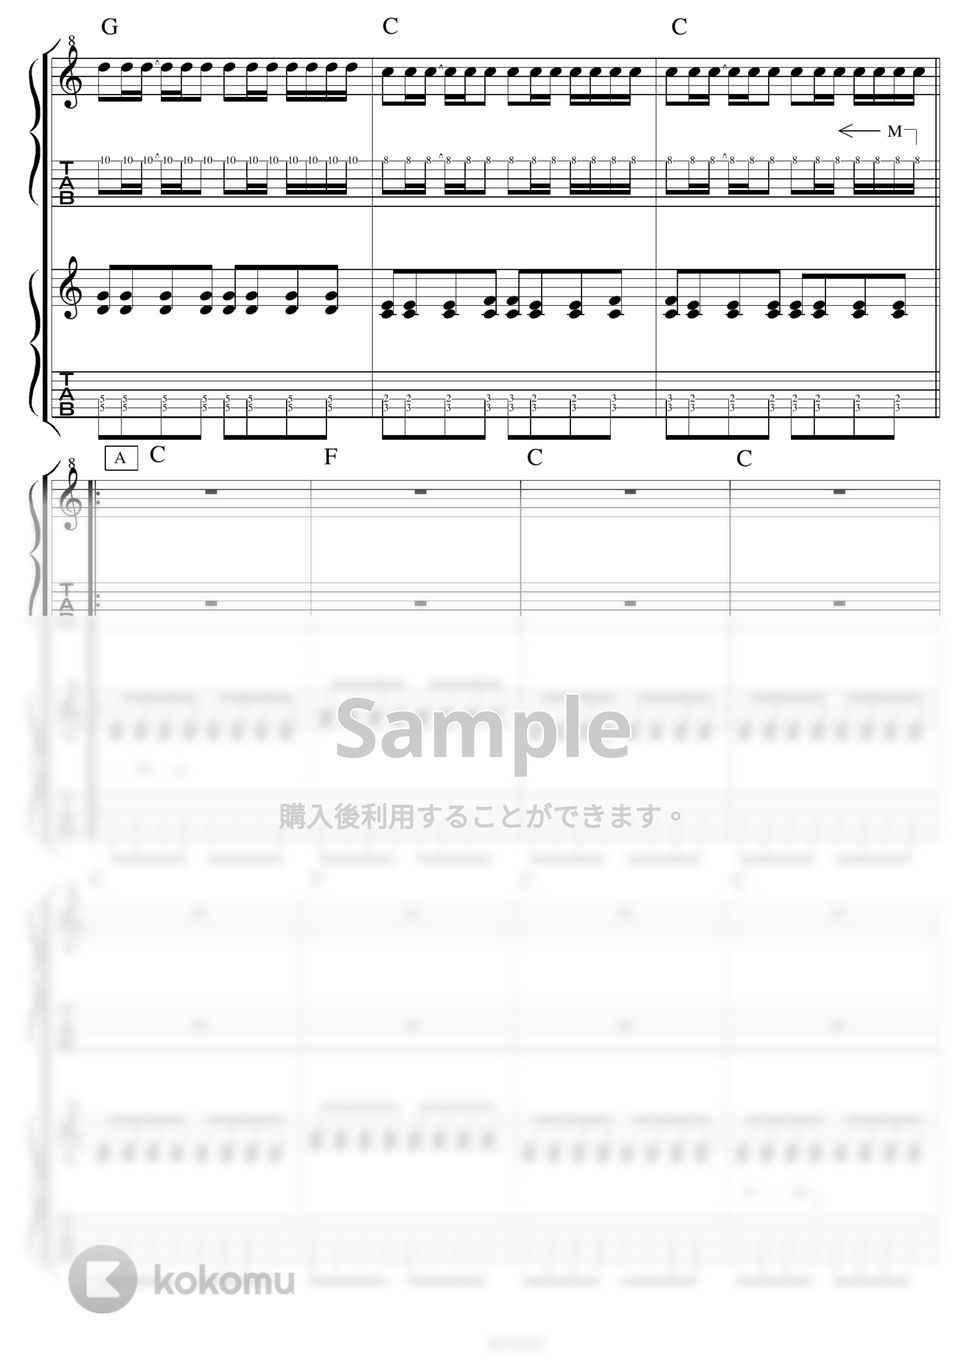 10-FEET - 10-FEET人気曲3セット ギター演奏動画付TAB譜 by バイトーン音楽教室